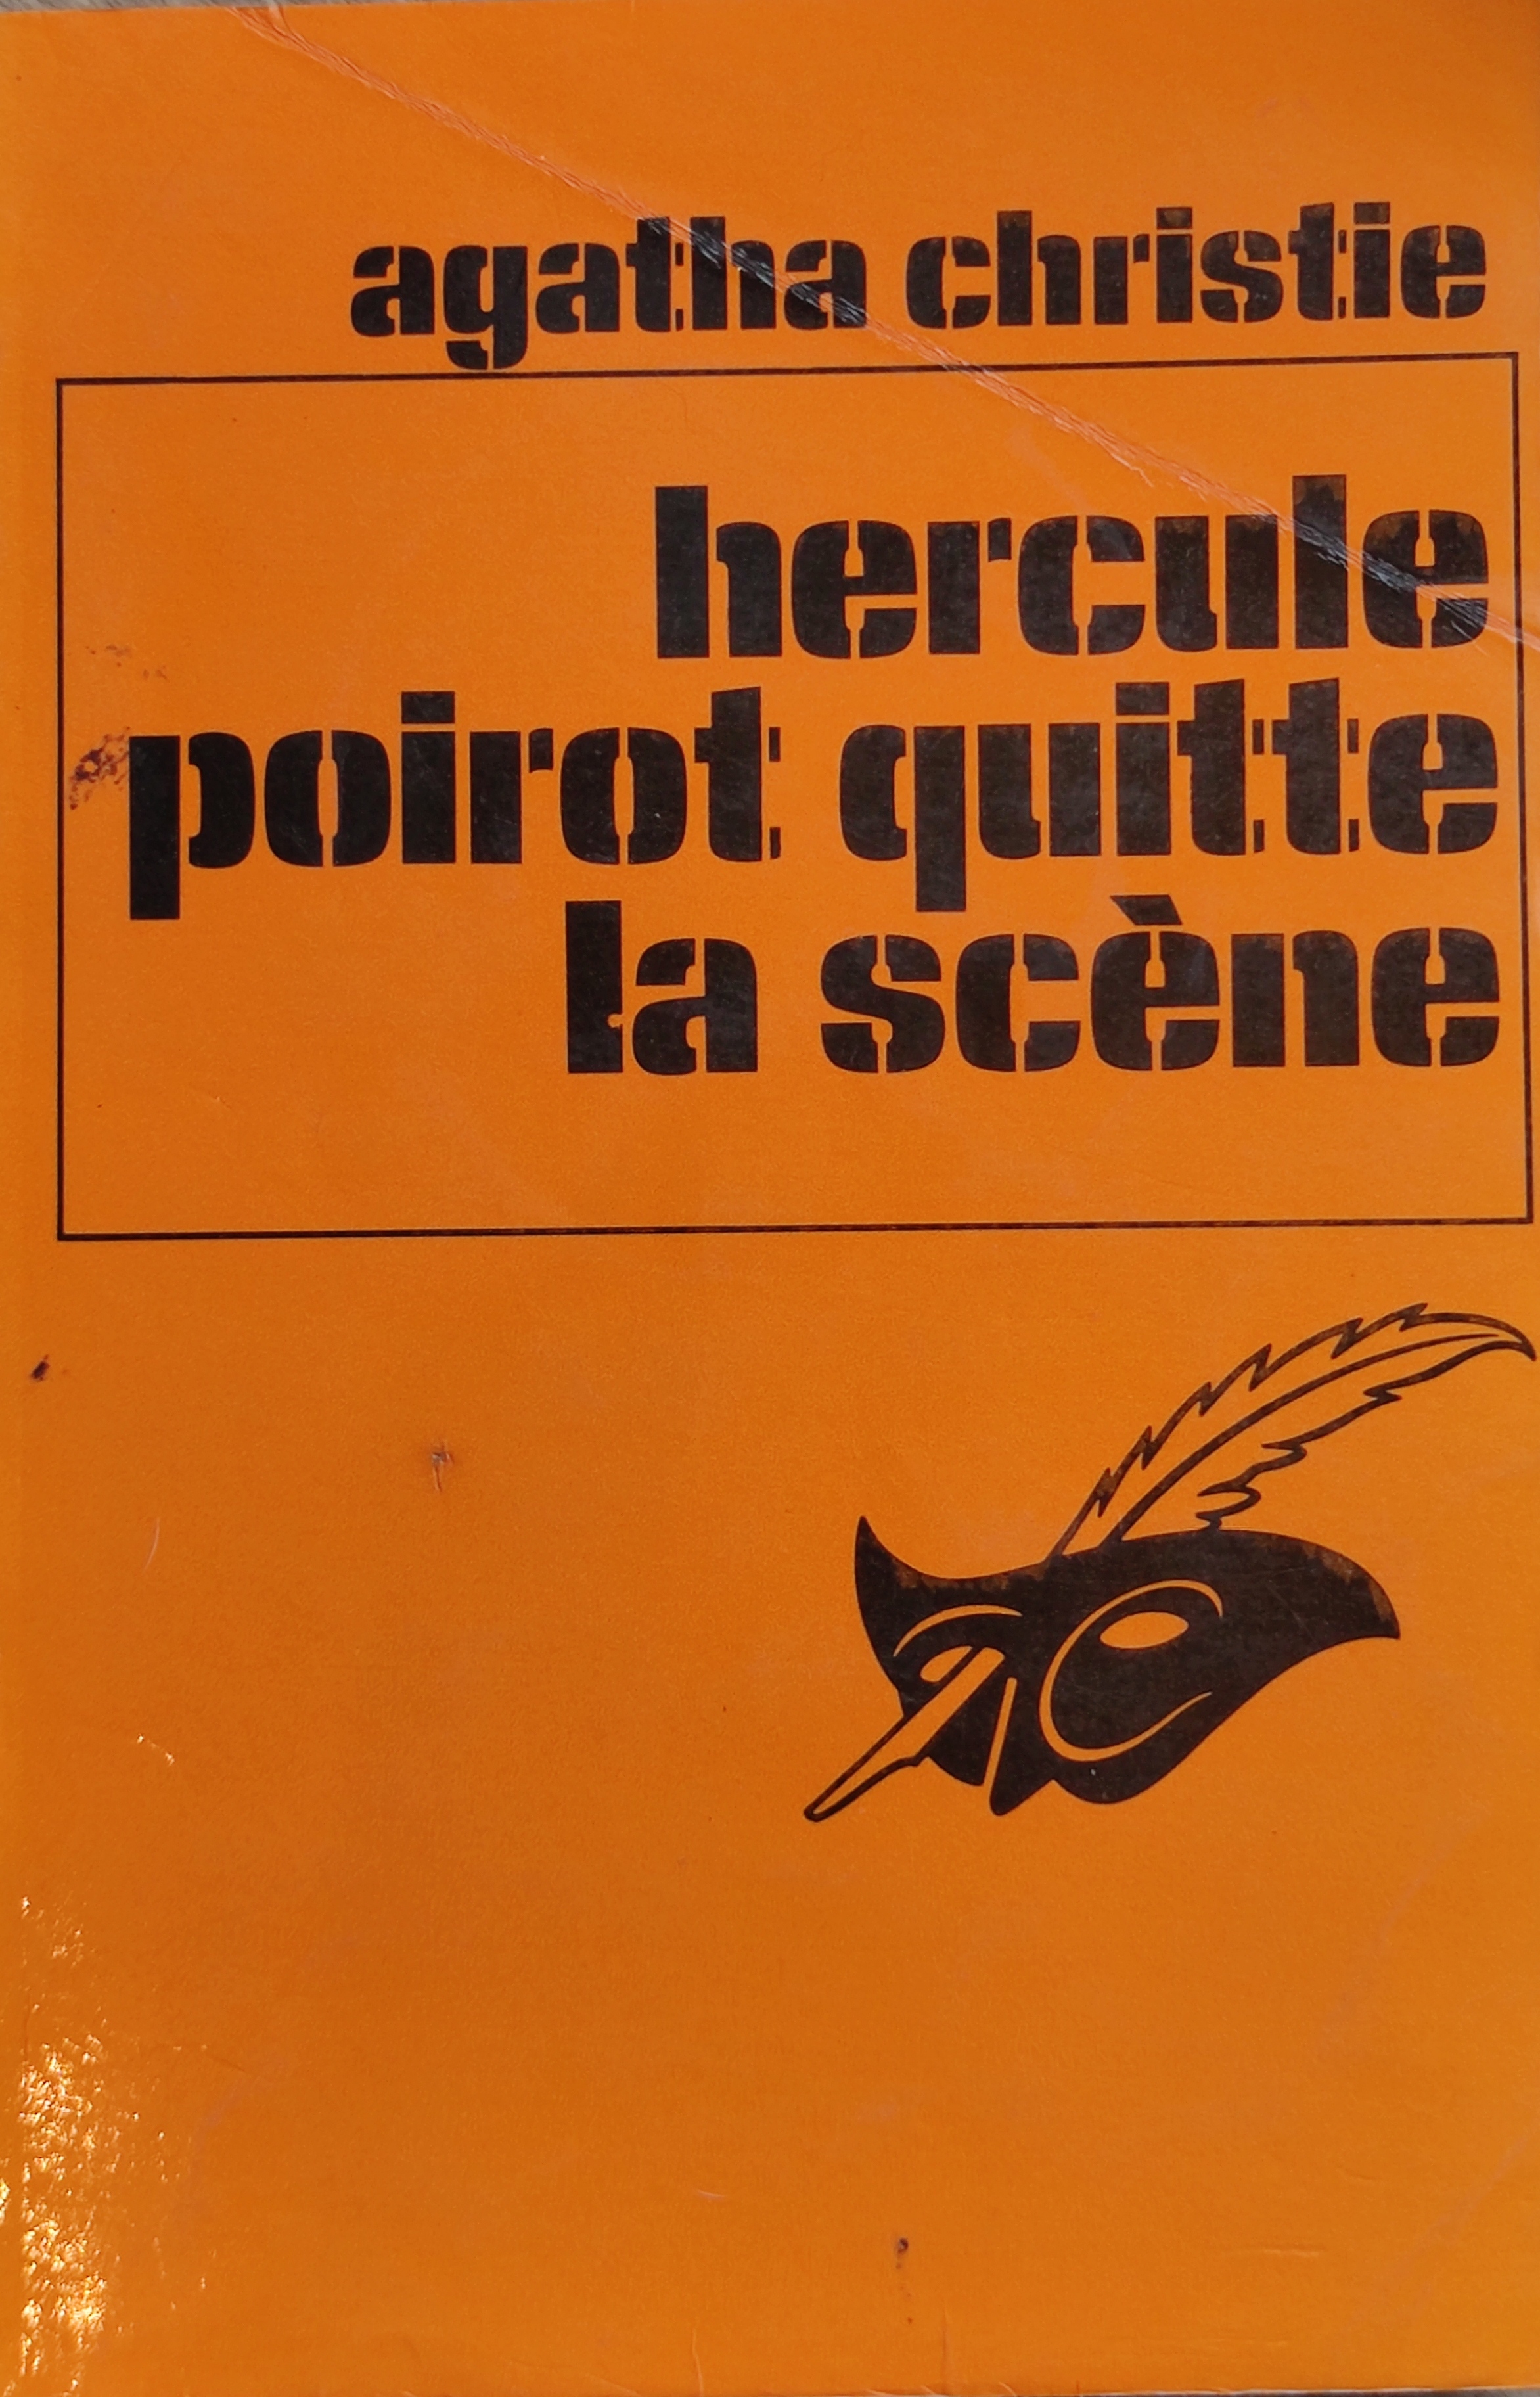 Poirot quitte la scène (Paperback, Français language, 1980, Librairie des Champs Elysées, collection Le Masque)